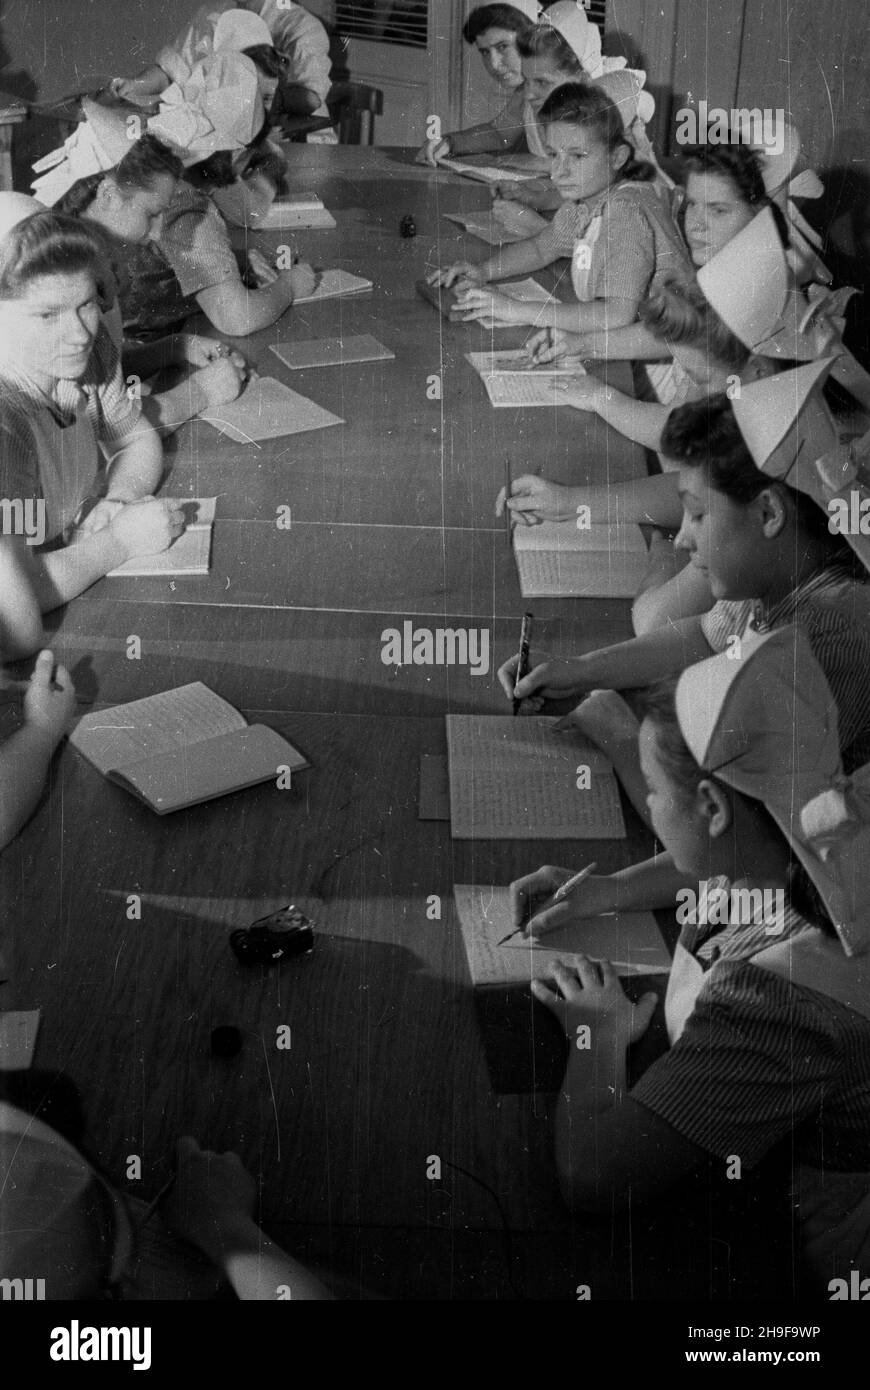 Polska, 1948. Szko³a pielêgniarska. Dok³adny miesi¹c i dzieñ wydarzenia nieustalone.  bk  PAP      Poland, 1948. A nursing school.  bk  PAP Stock Photo